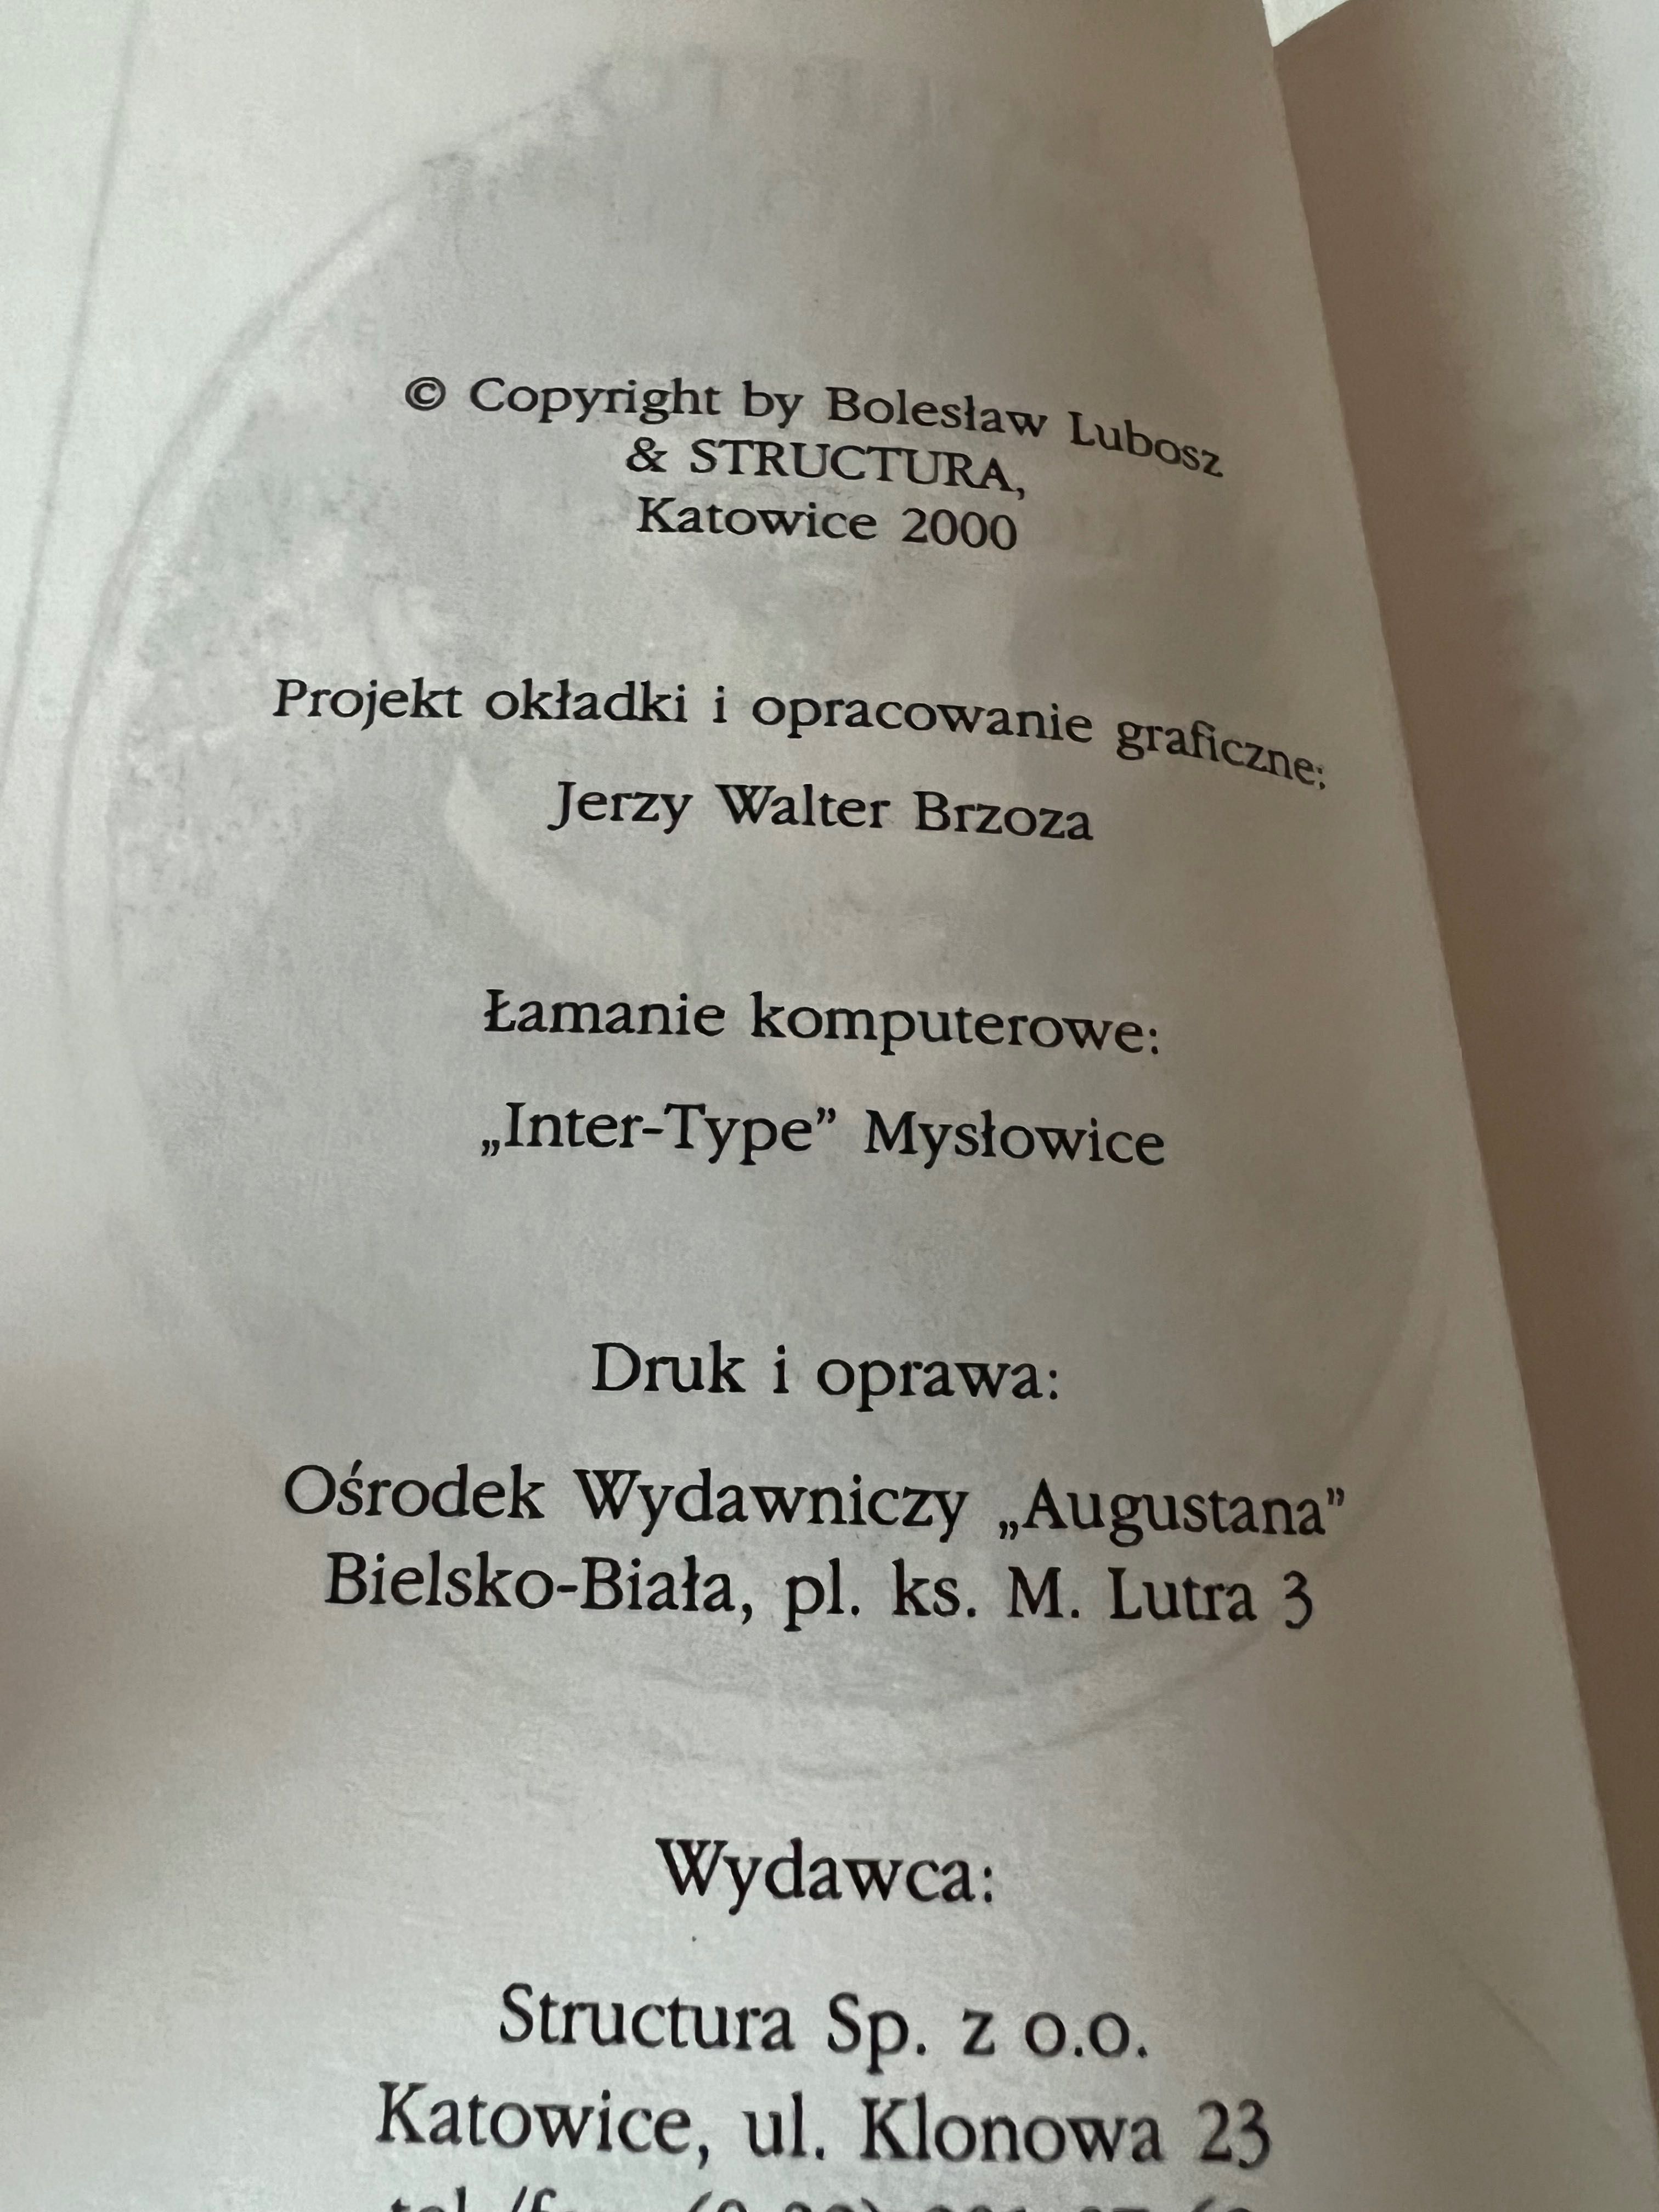 Bolesław Lubosz - Kobieto, boski diable